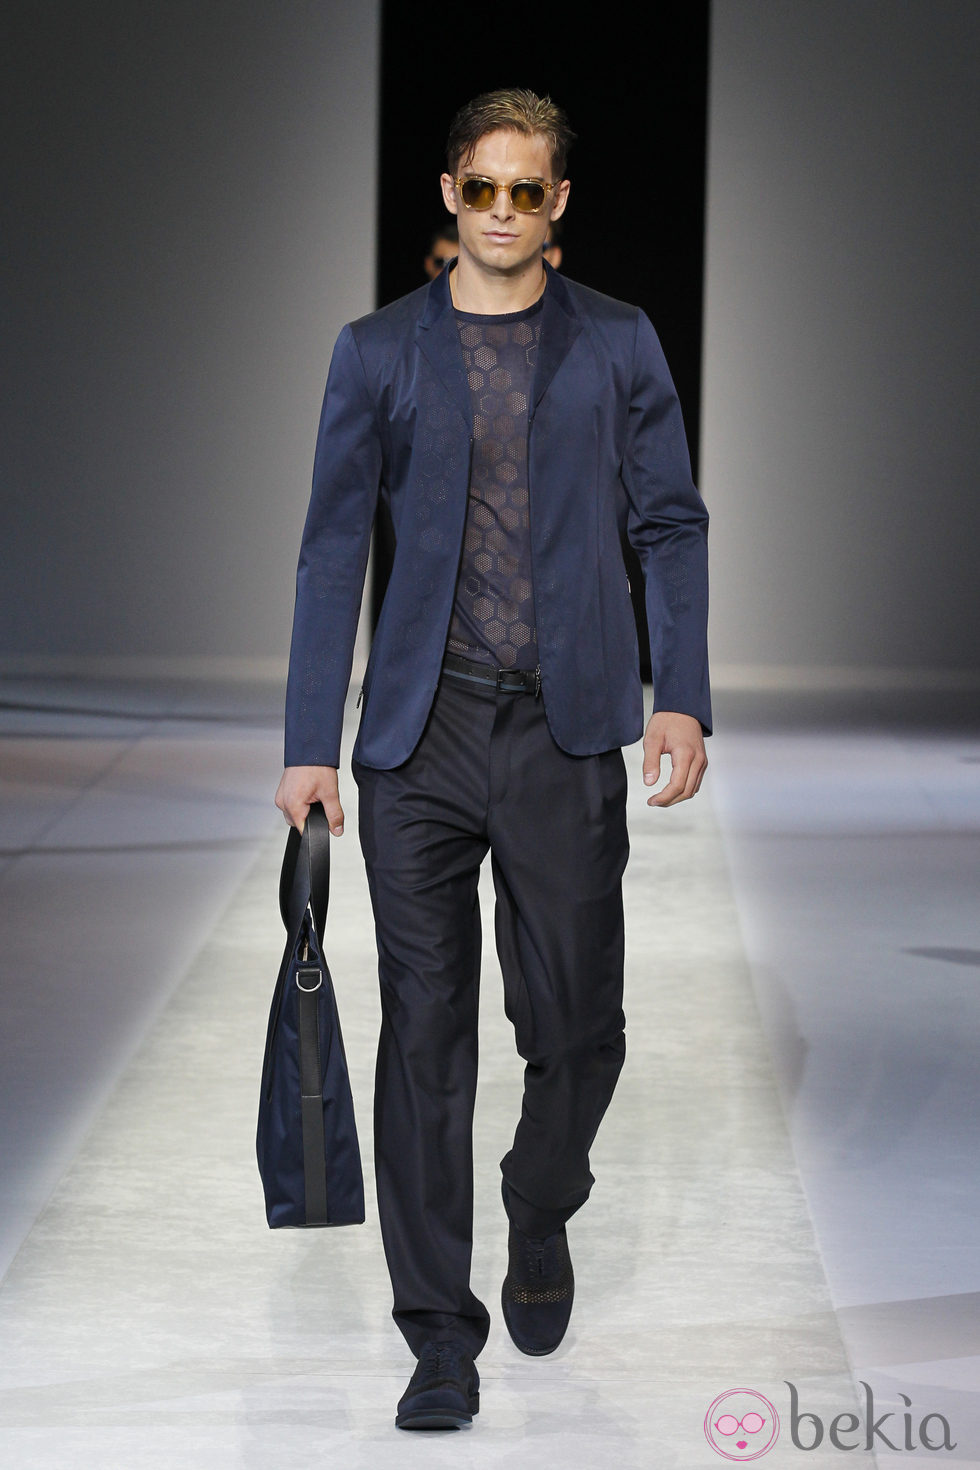 Chaqueta azul de la colección primavera/verano 2014 de Emporio Armani en la Semana de la Moda de Milán